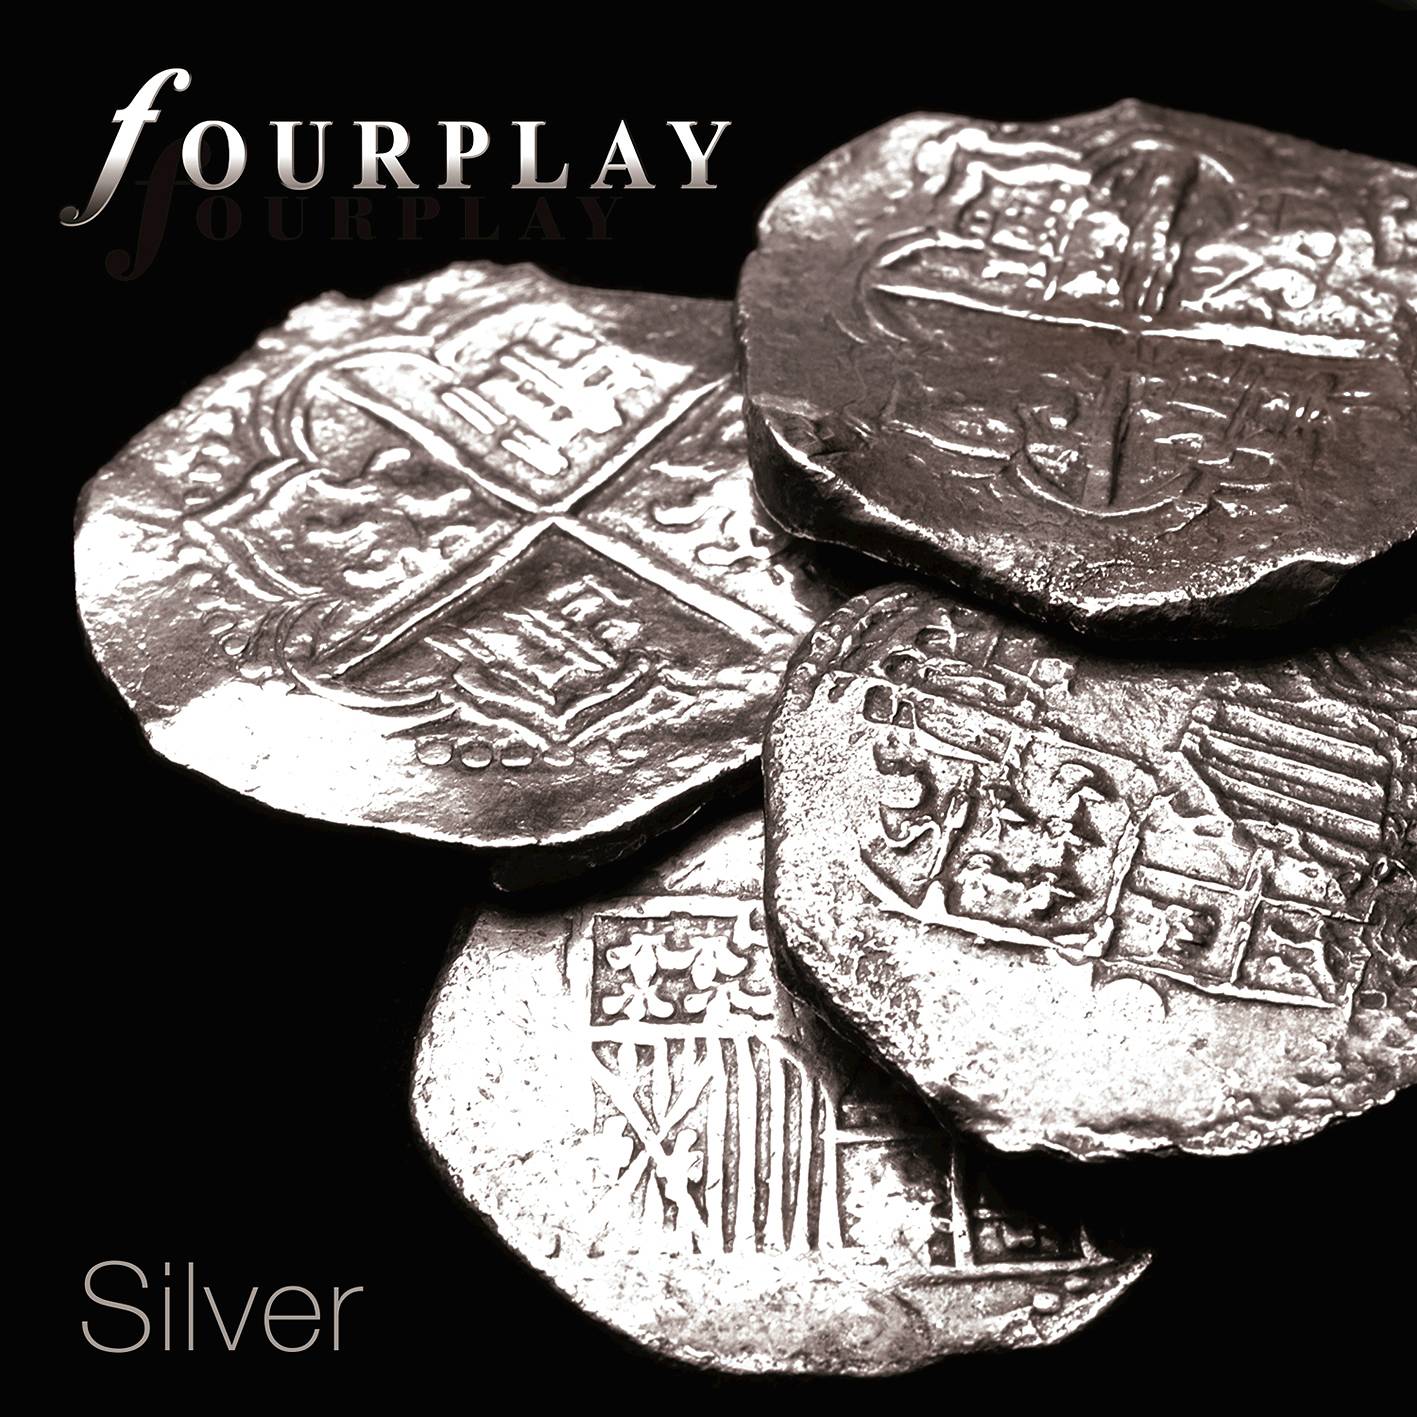 Fourplay - Silver (2015) [FLAC 24bit/96kHz]